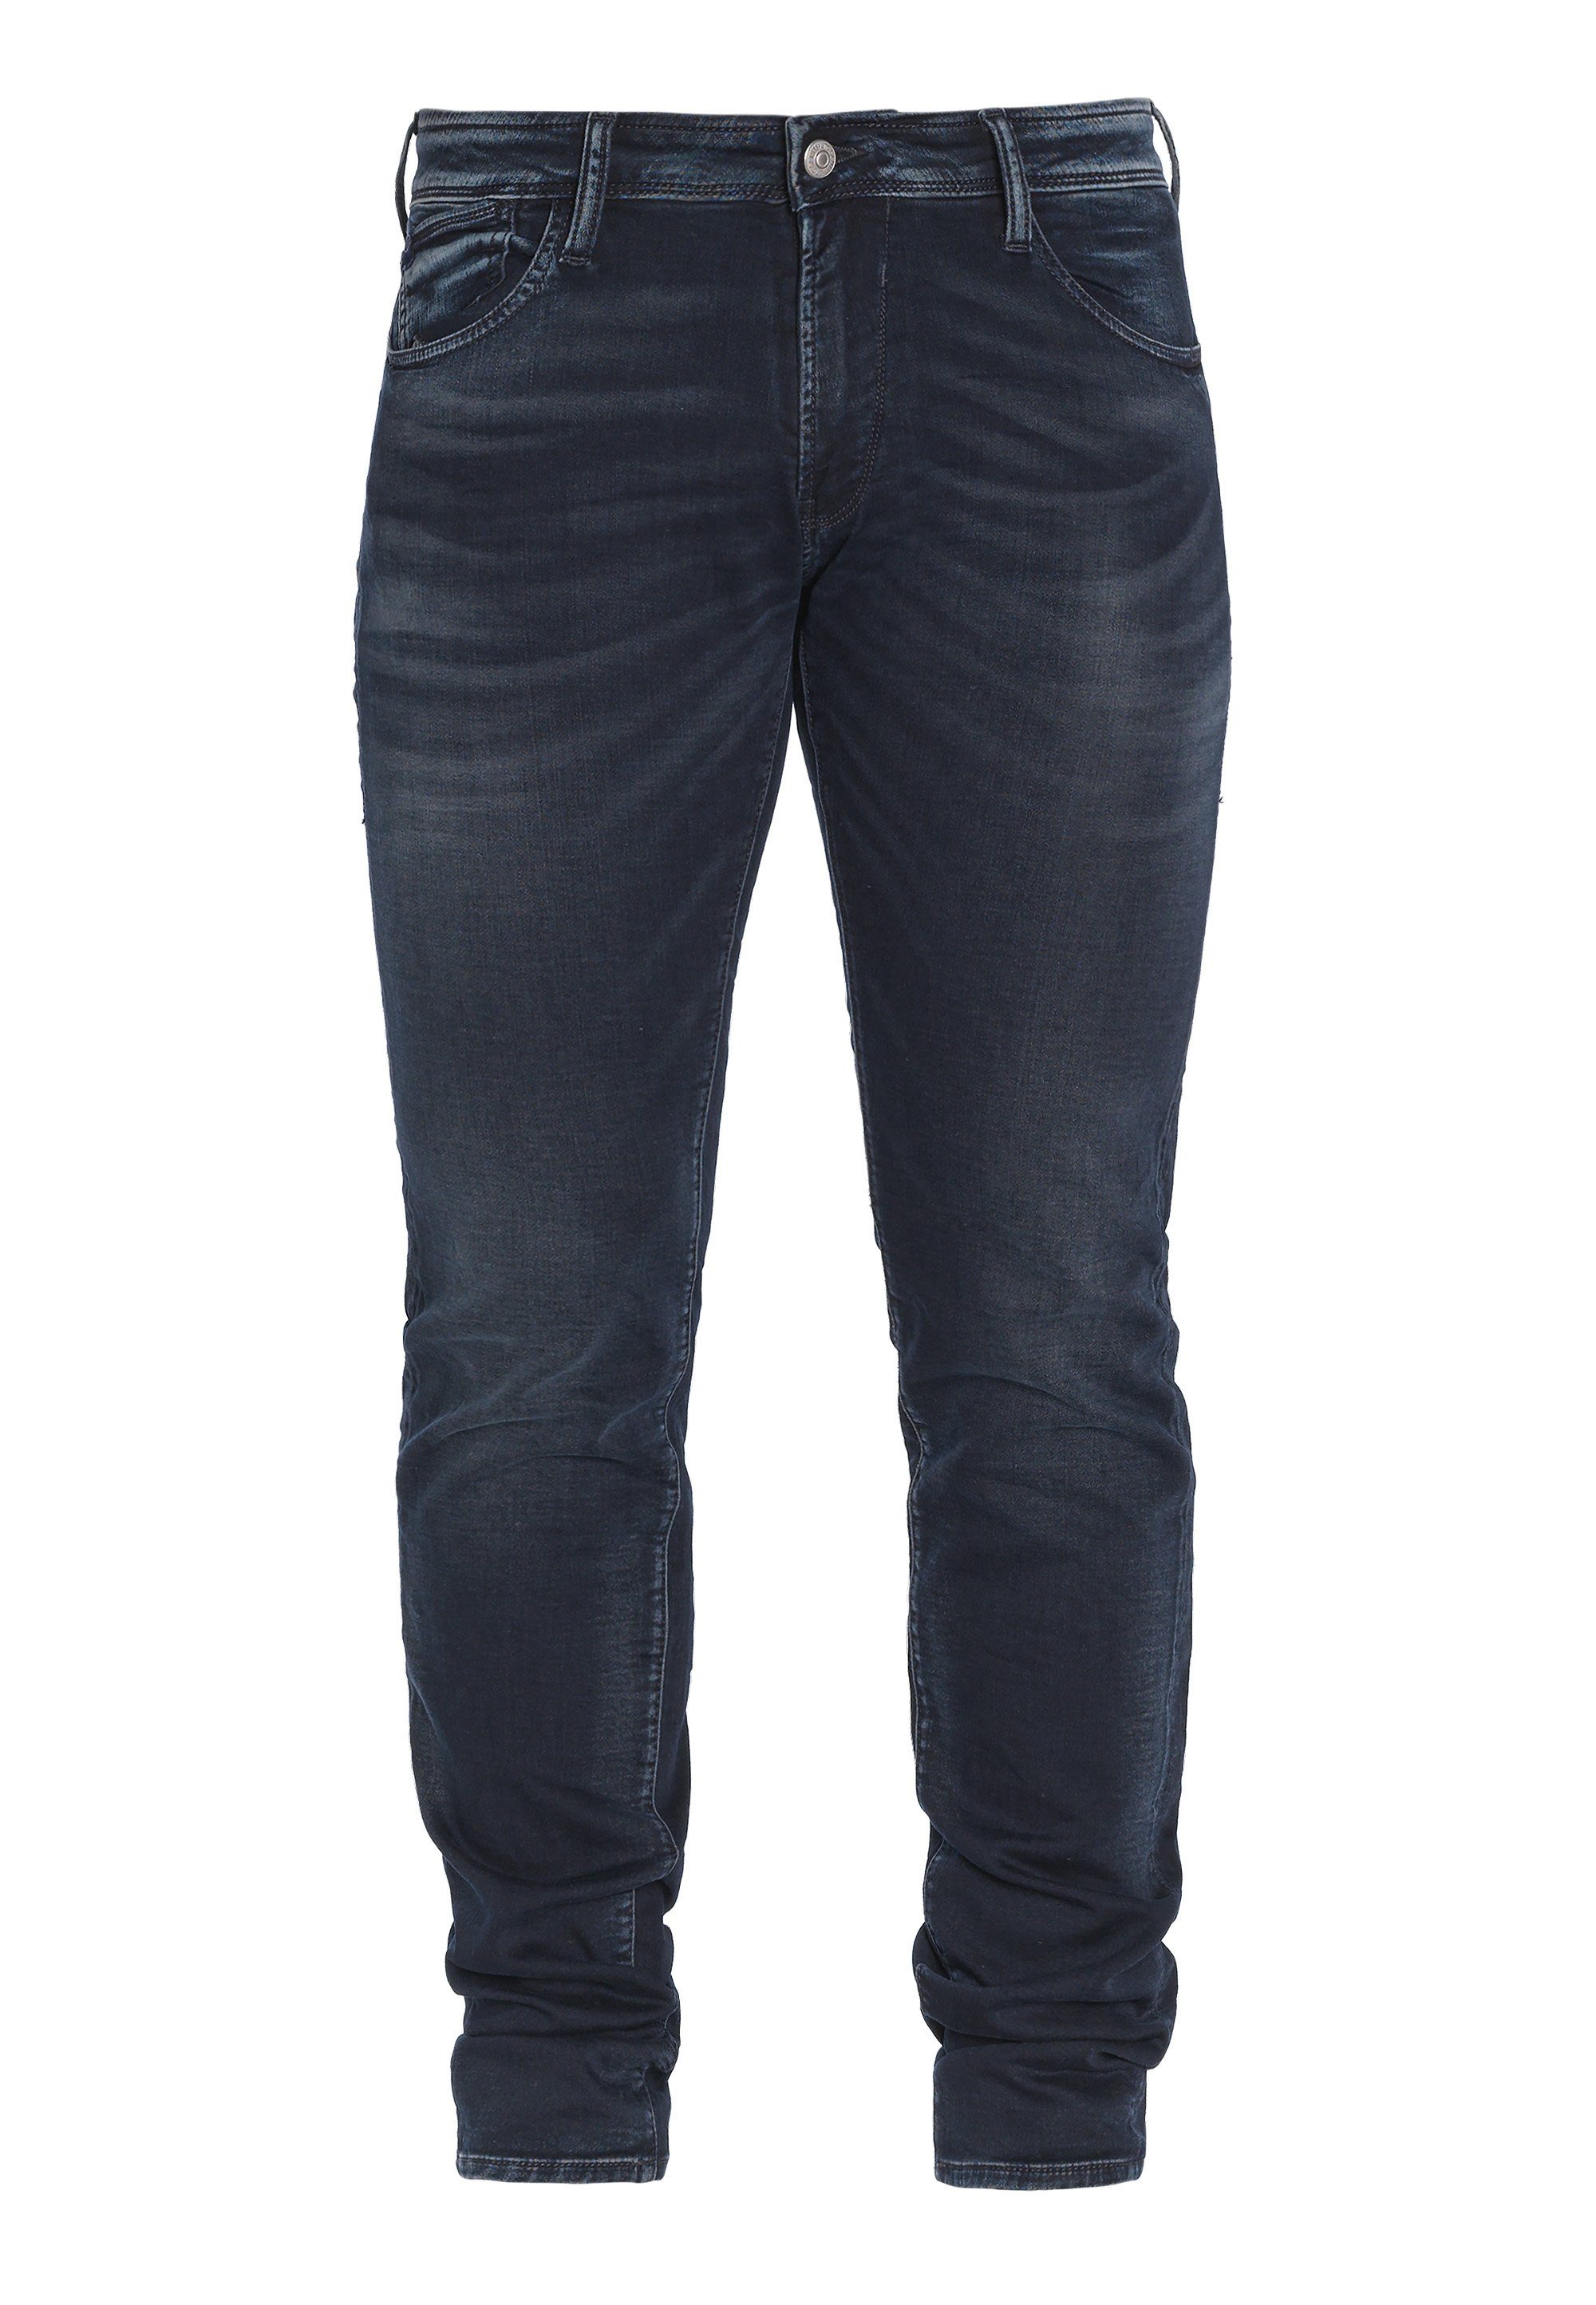 Jeans im klassischen Cerises Temps Bequeme 5-Pocket-Design Le Des